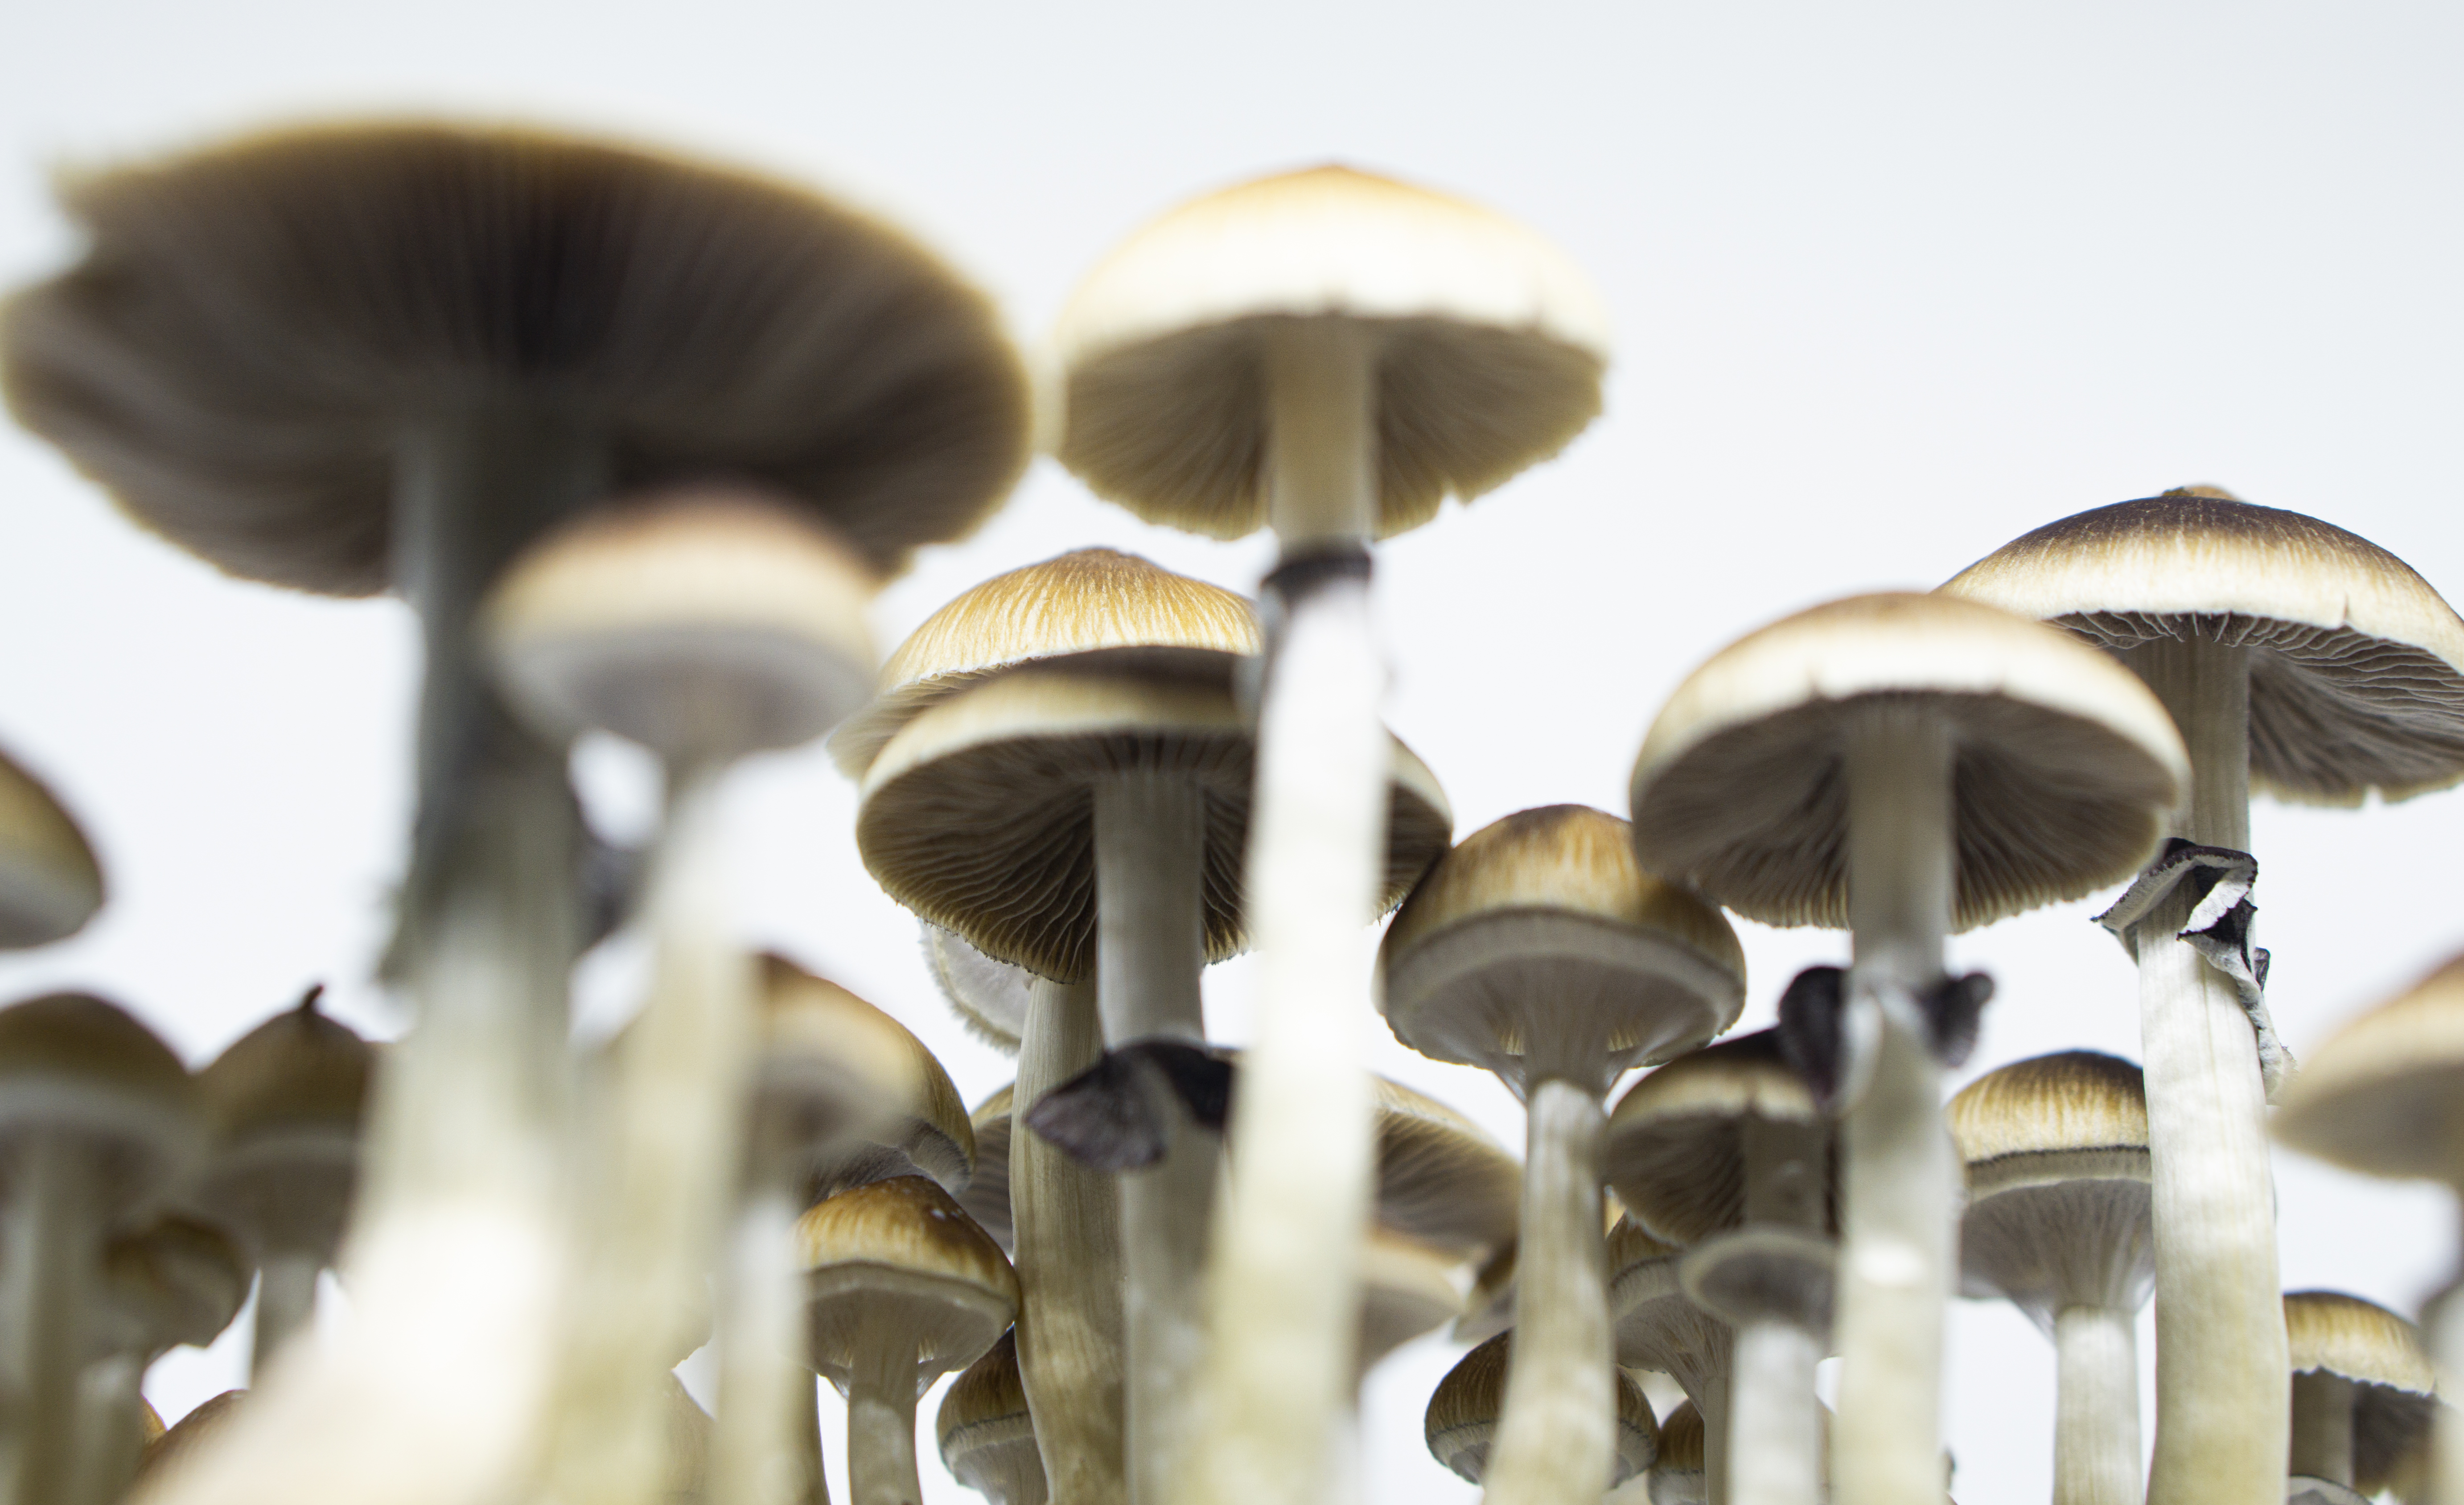 cogumelos mágicos são legais no brasil